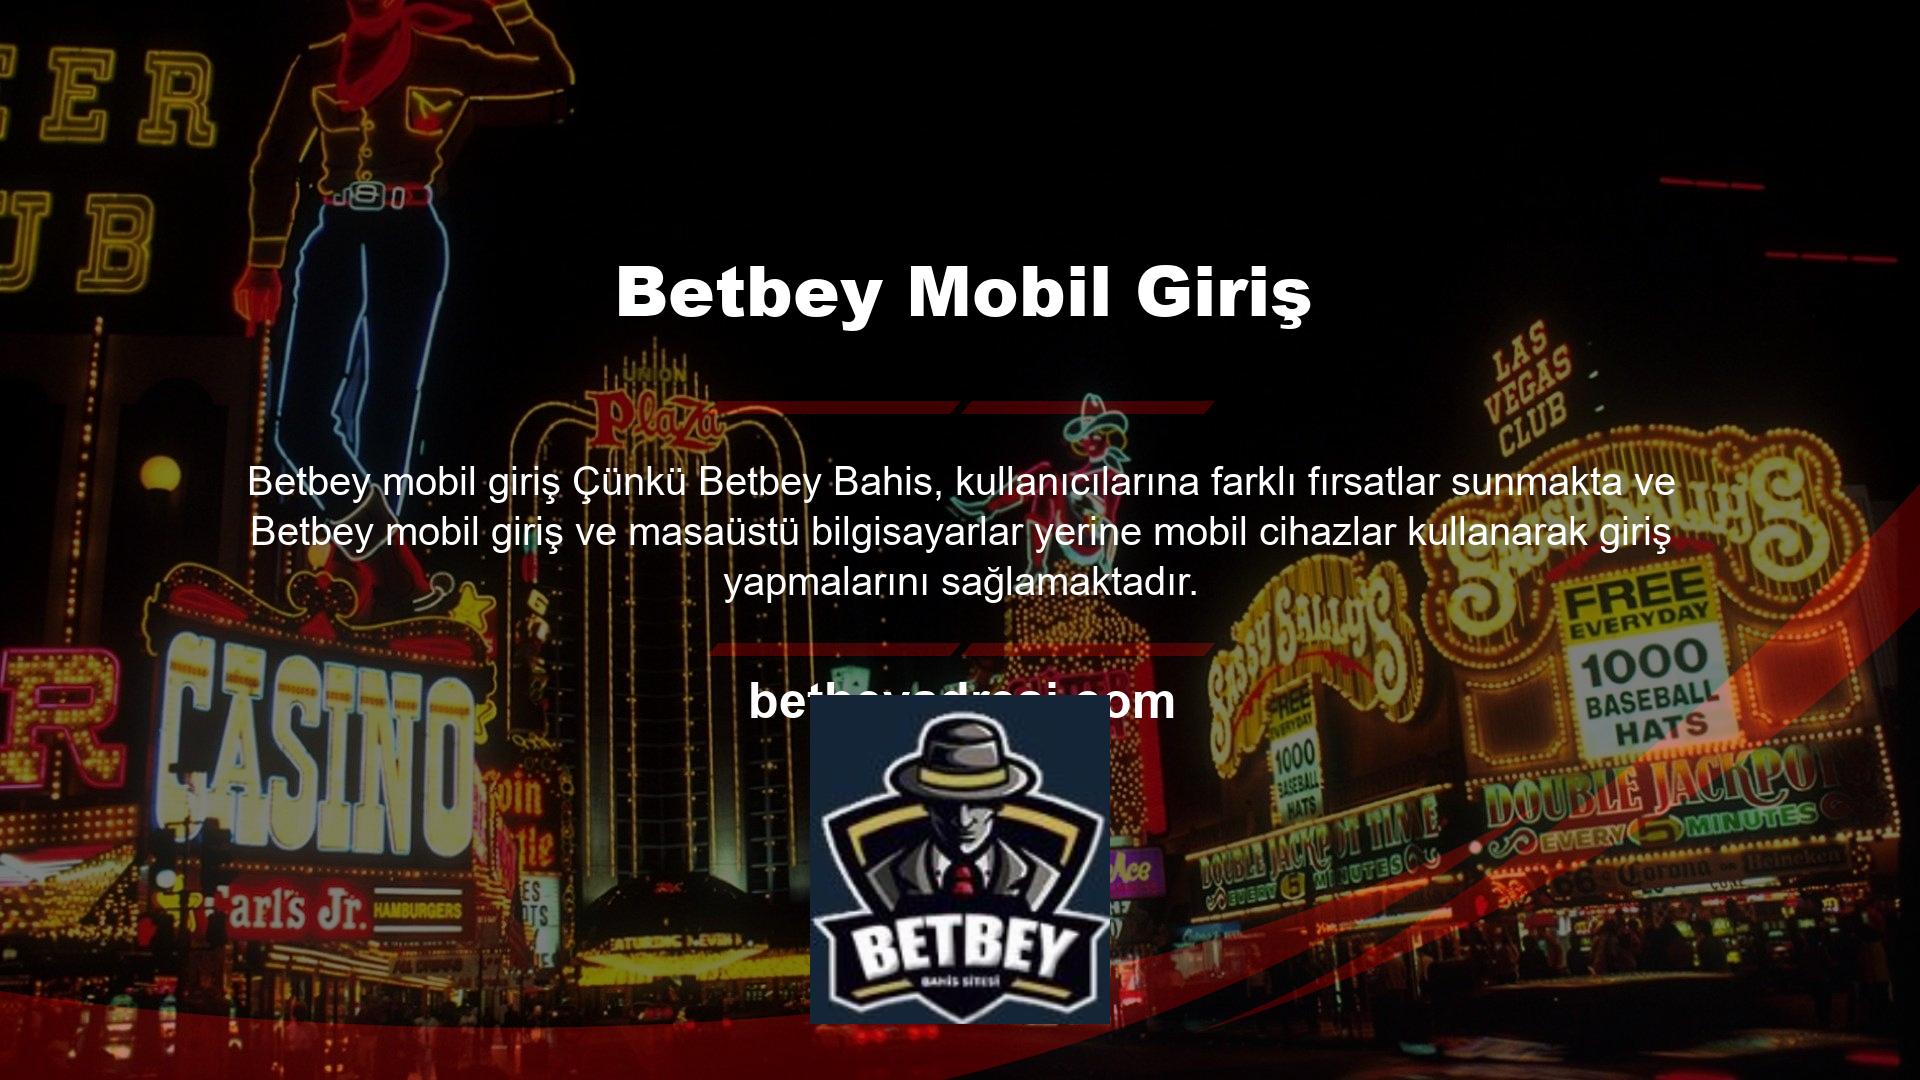 Bu nedenle Betbey web sitesinin üye sayısı her geçen gün artmaktadır